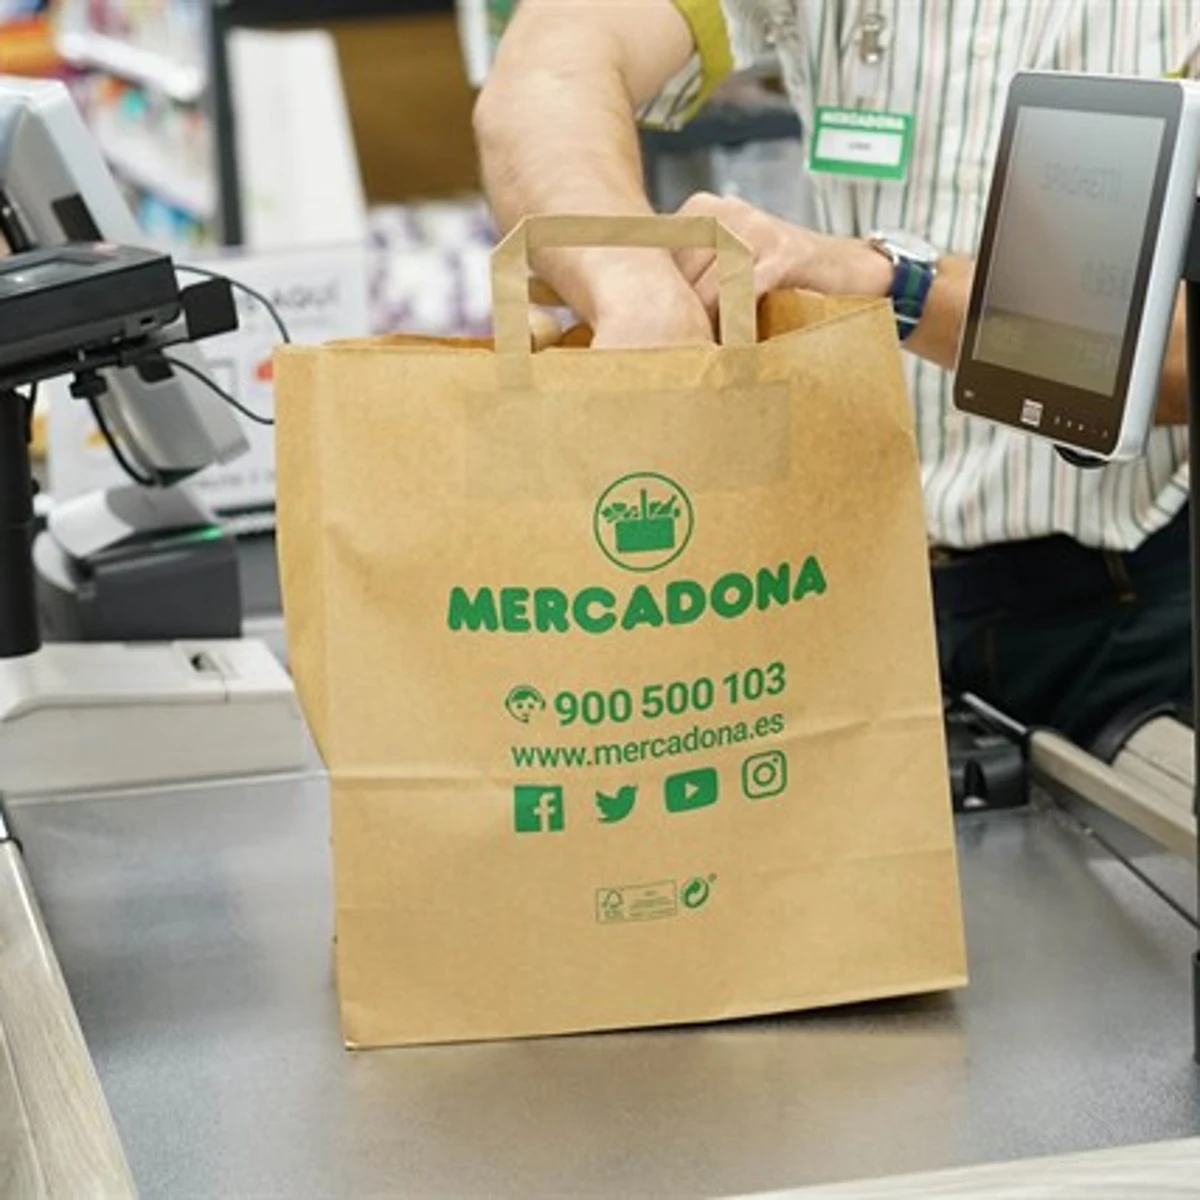 Mercadona retirará las bolsas de plástico de sus 1.600 supermercados antes de mayo | Onda Cero Radio